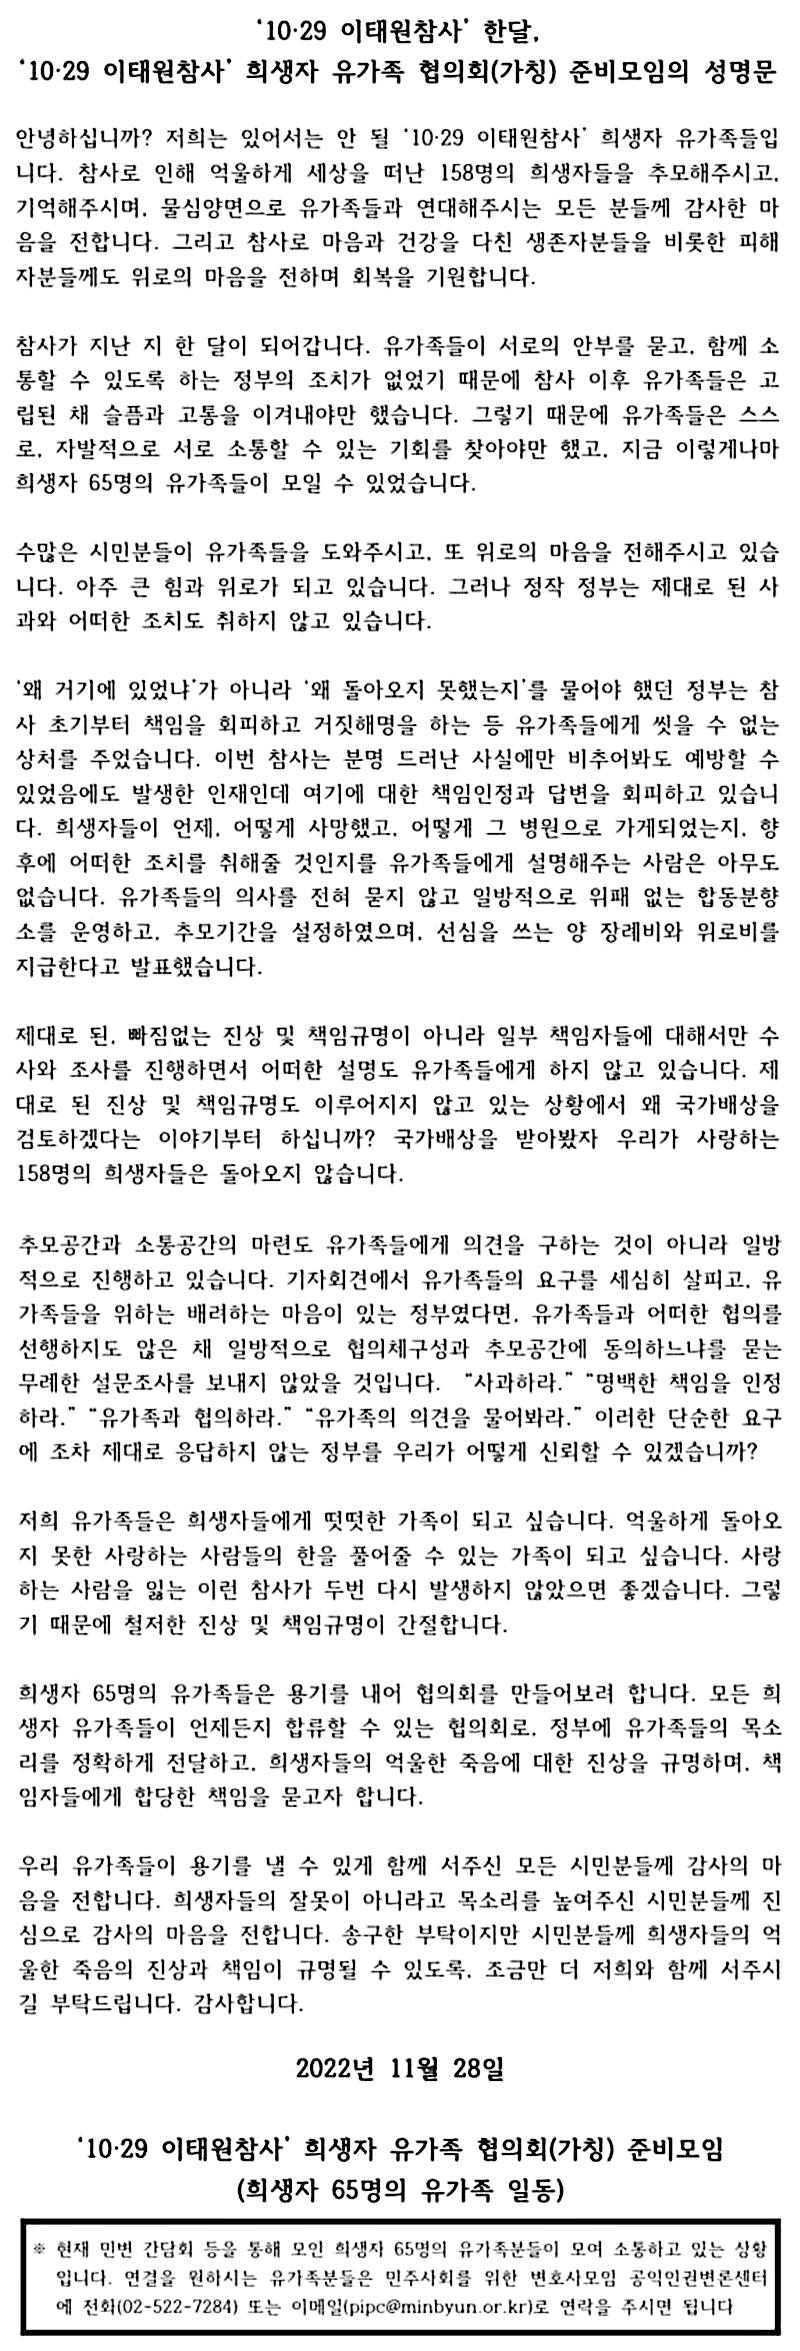 10.29 이태원 참사 희생자 유가족 협의회 성명문